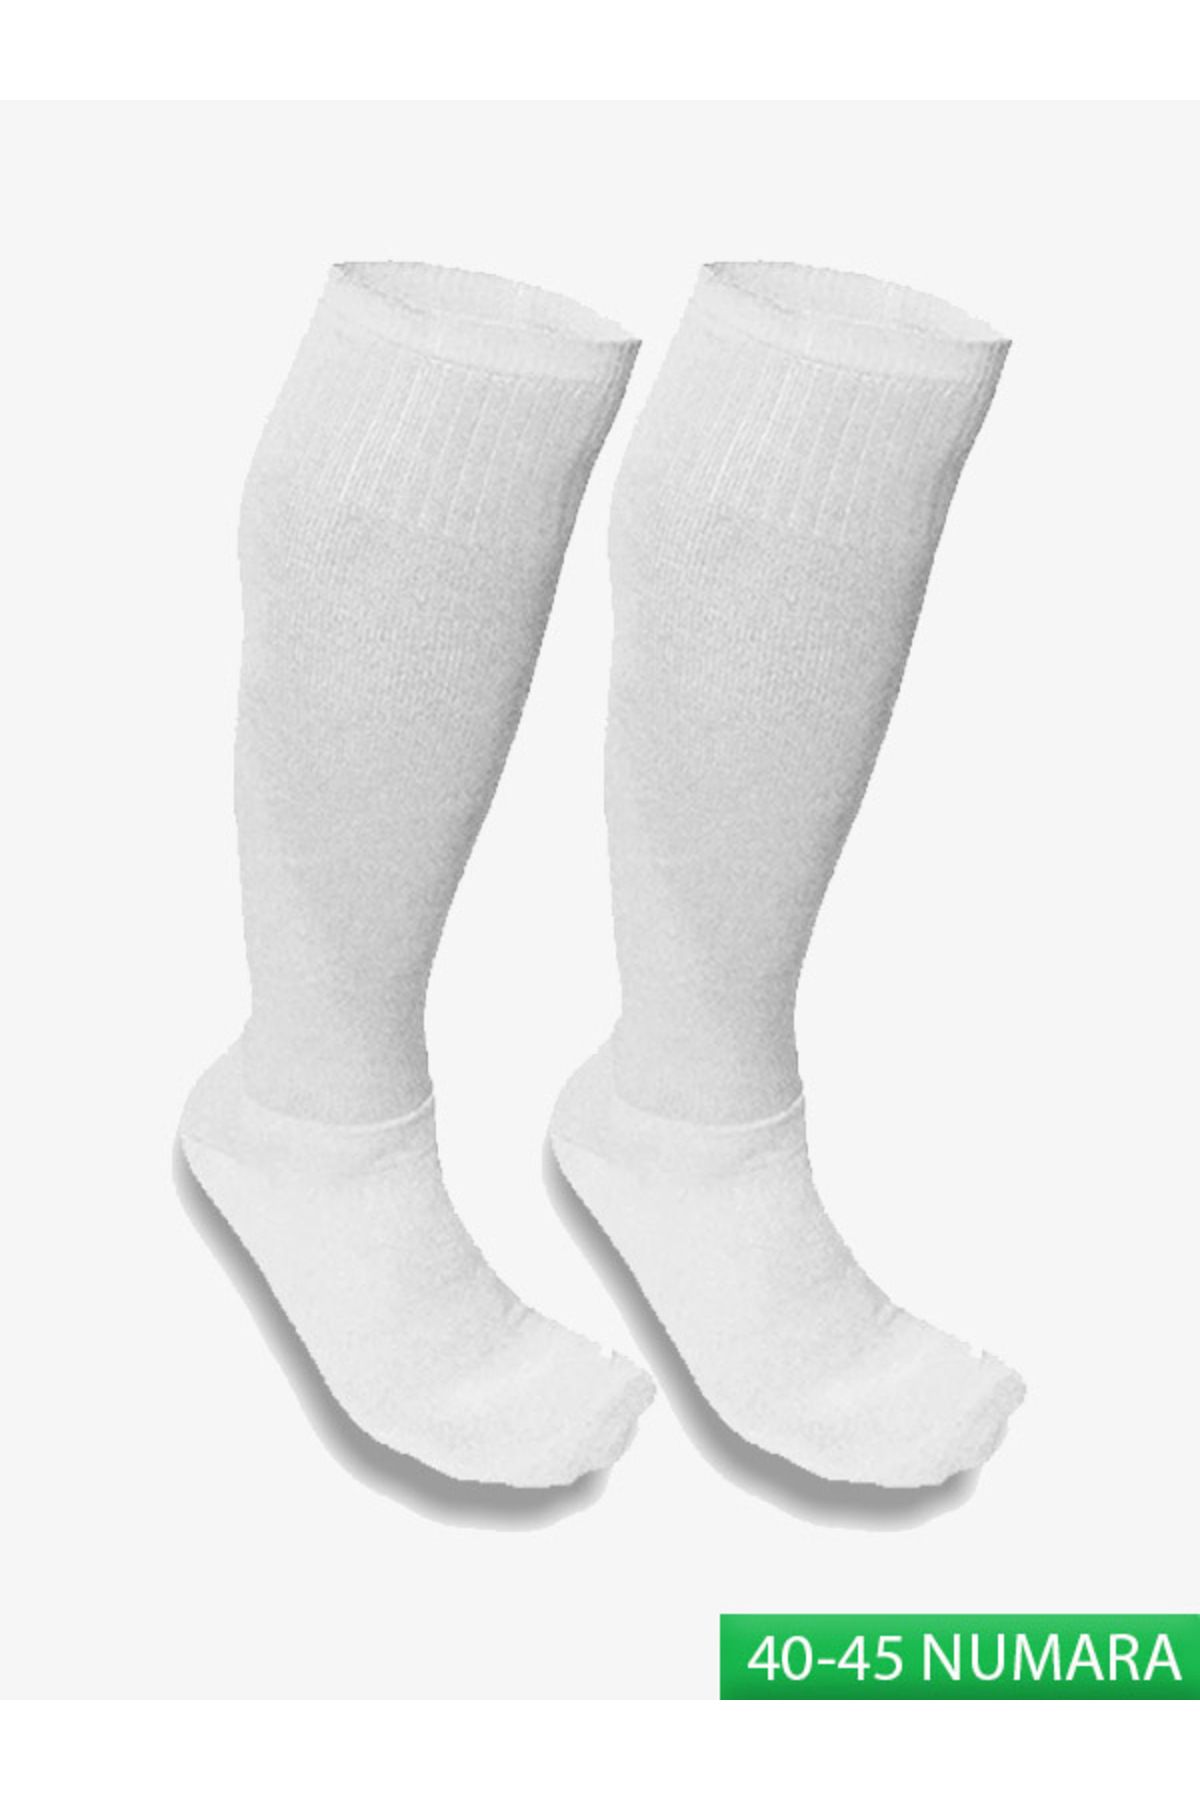 ACEYS Futbol Maç Çorabı 1 ÇİFT Futbol Tozluk Futbol Halı Saha Çorap Halısaha Konç Yetişkin